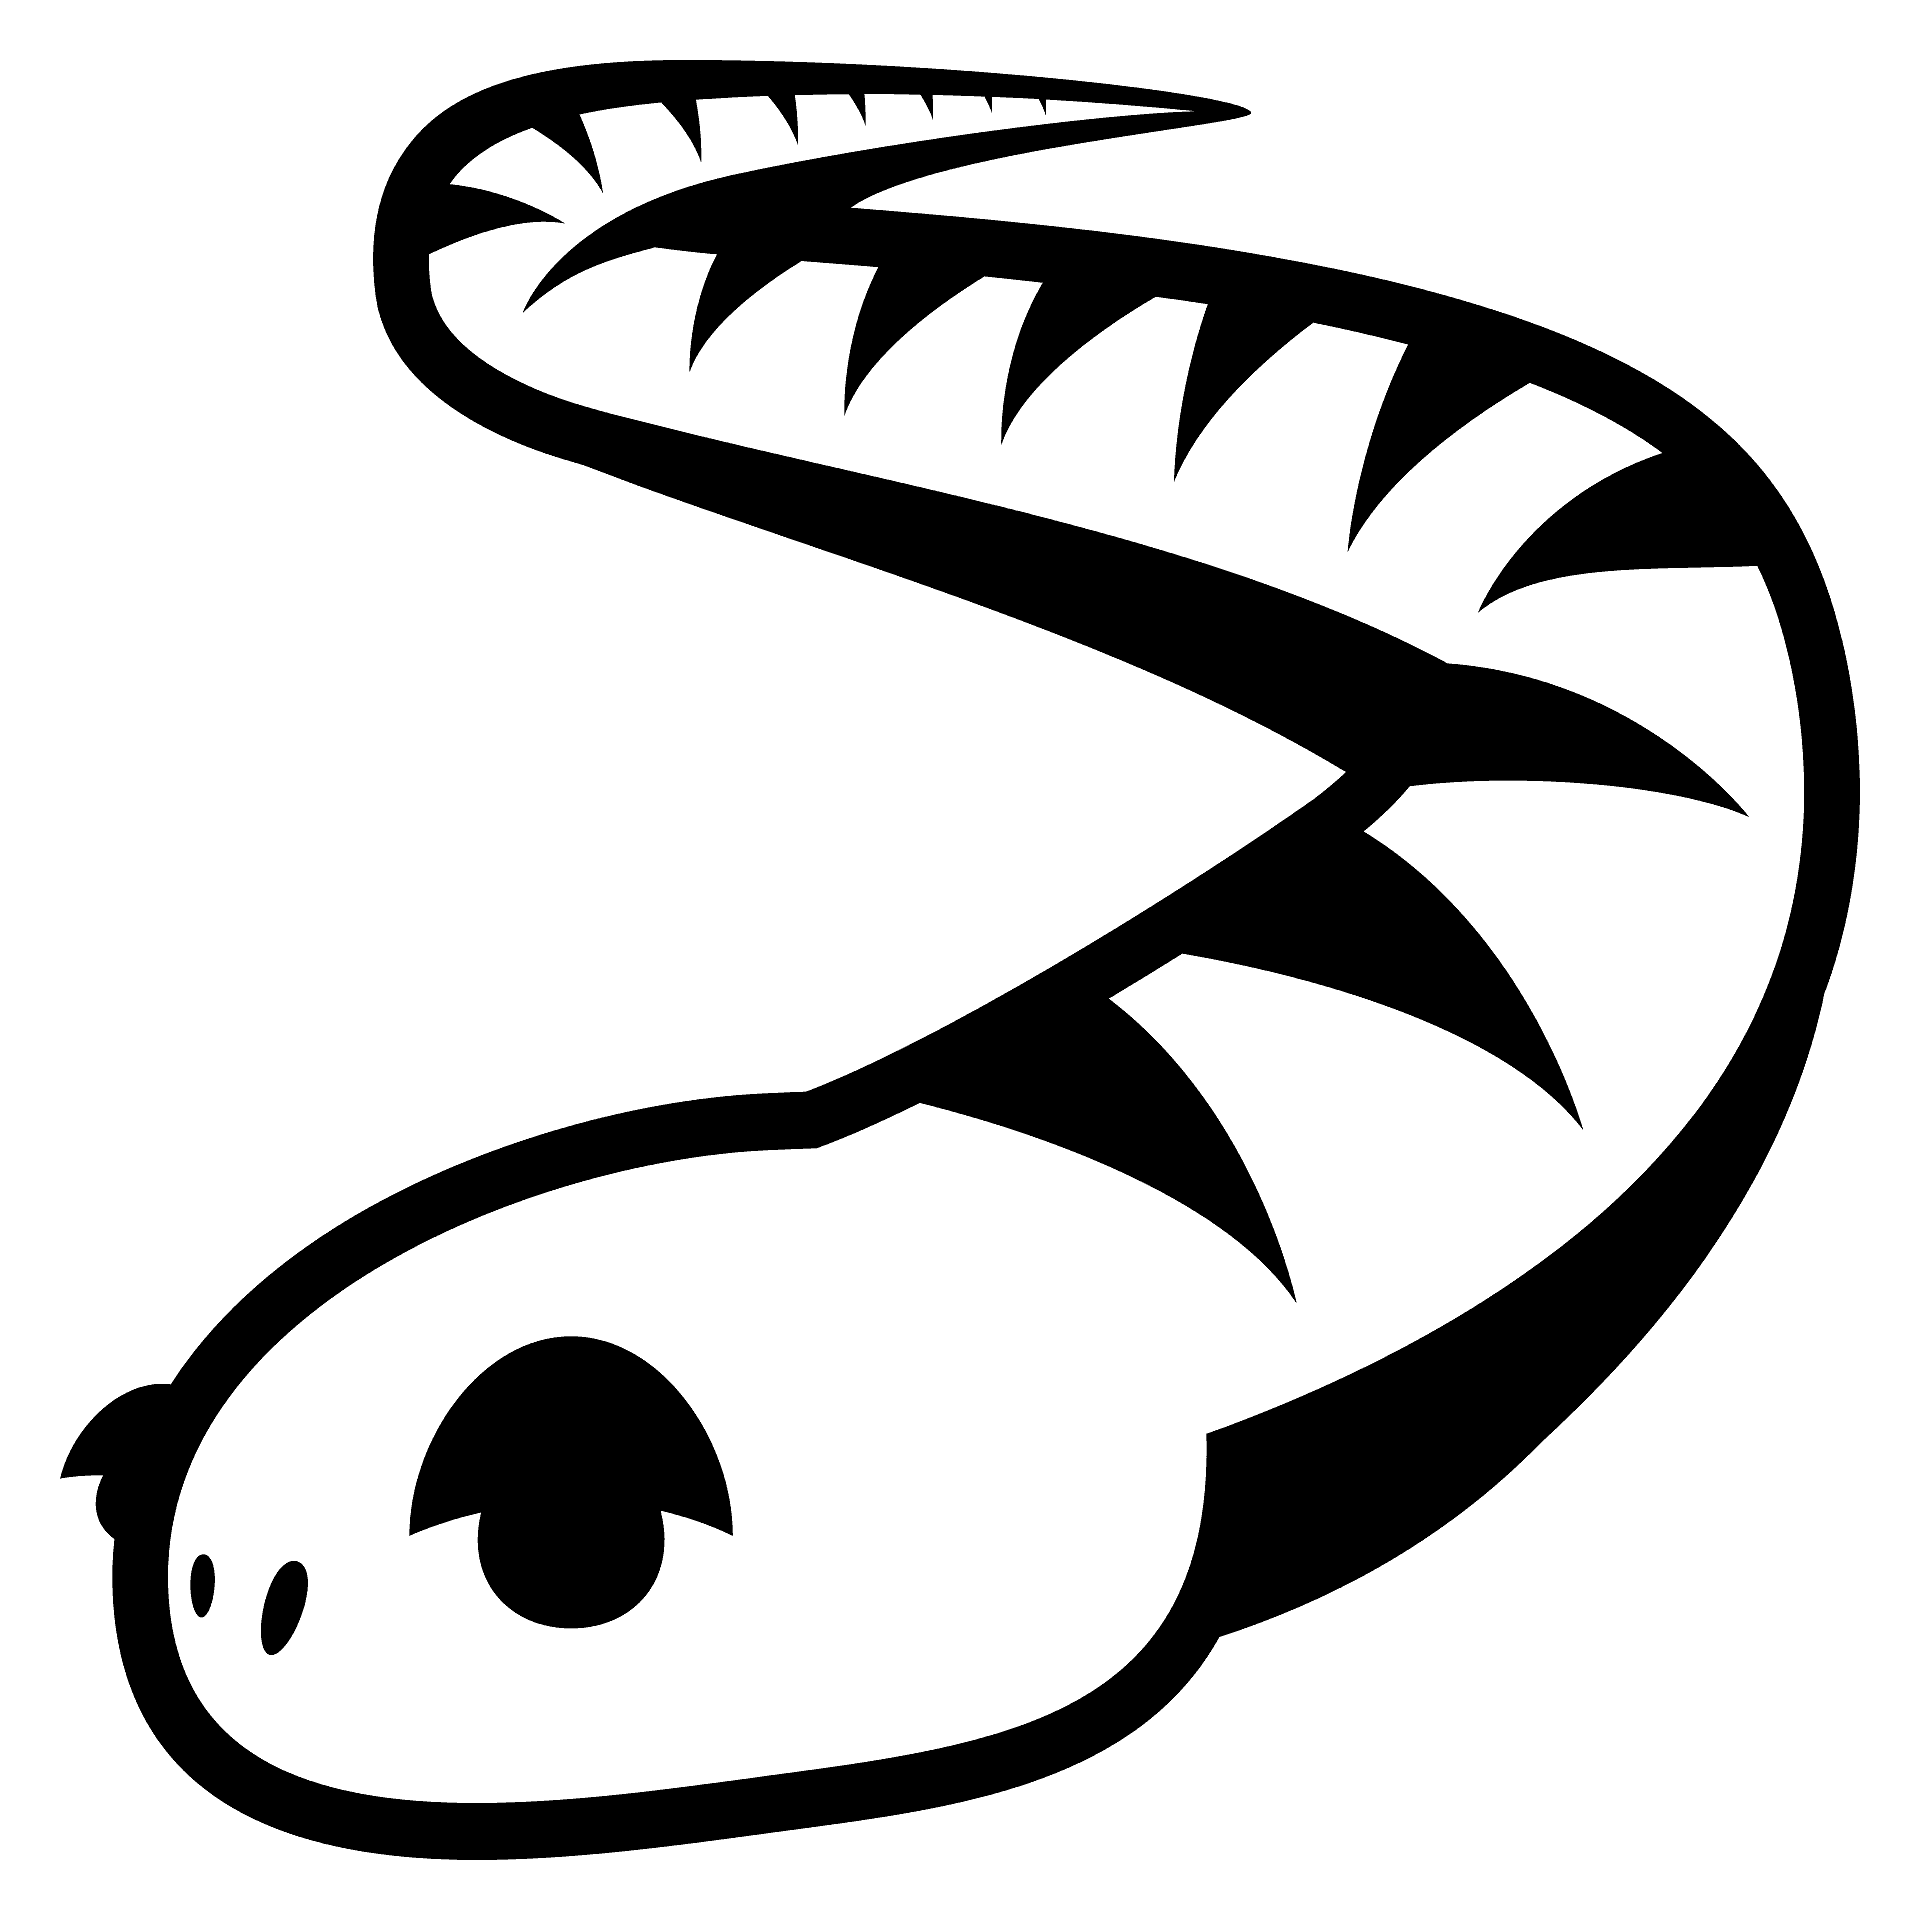 Disegno da colorare di un serpente stile cartoon